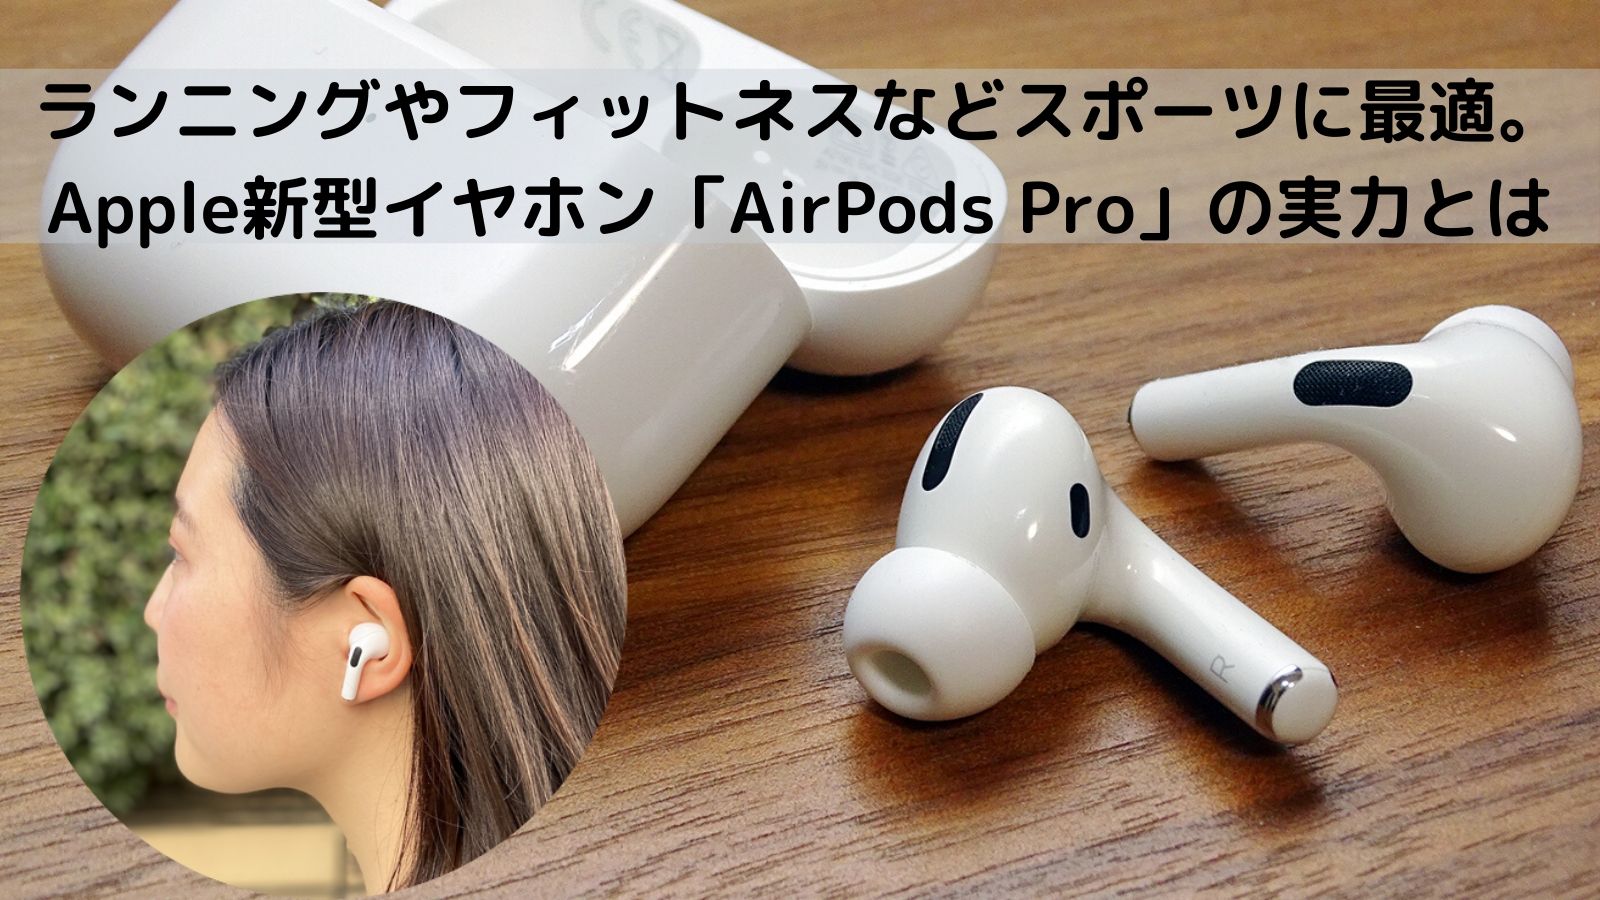 Apple新型イヤホン「AirPods Pro」は、”スポーツイヤホン”としてどう